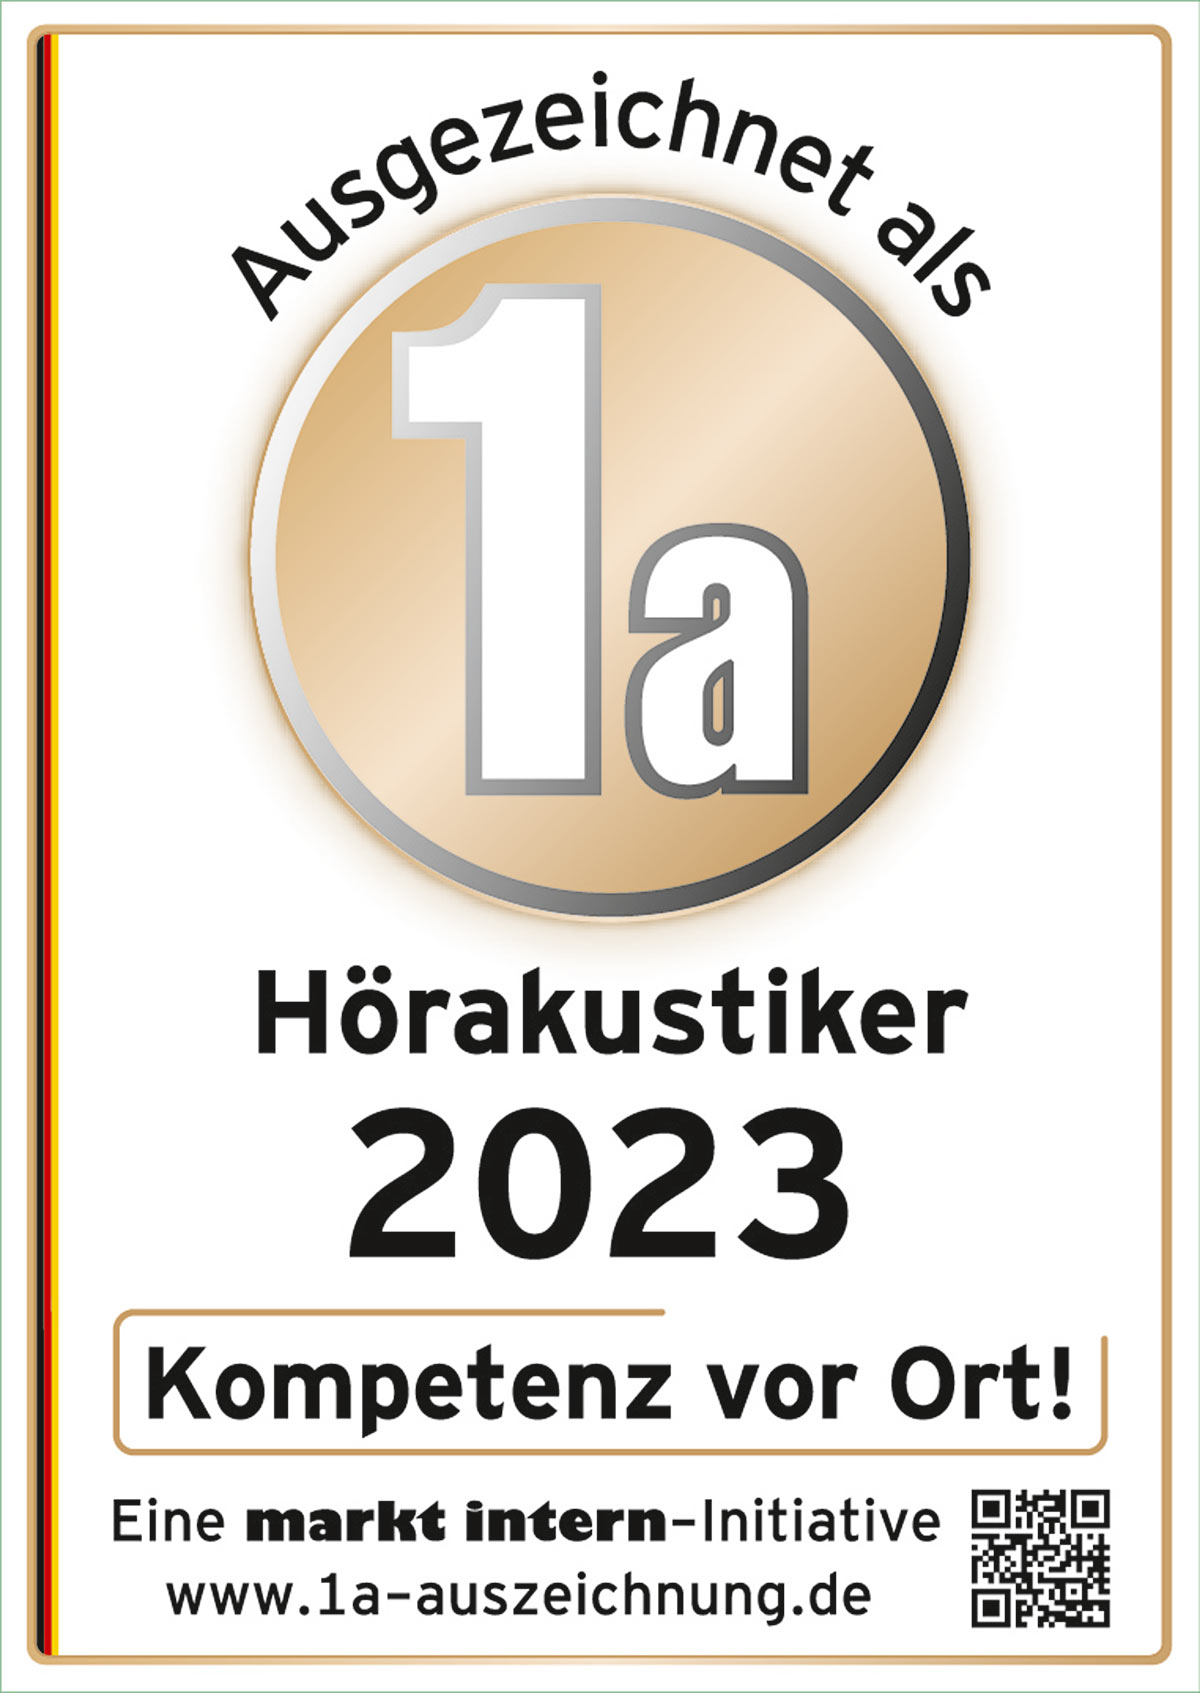 Aushezeichnet als Hörakustiker 2023 - Schier Optik Saalfeld/Neuhaus